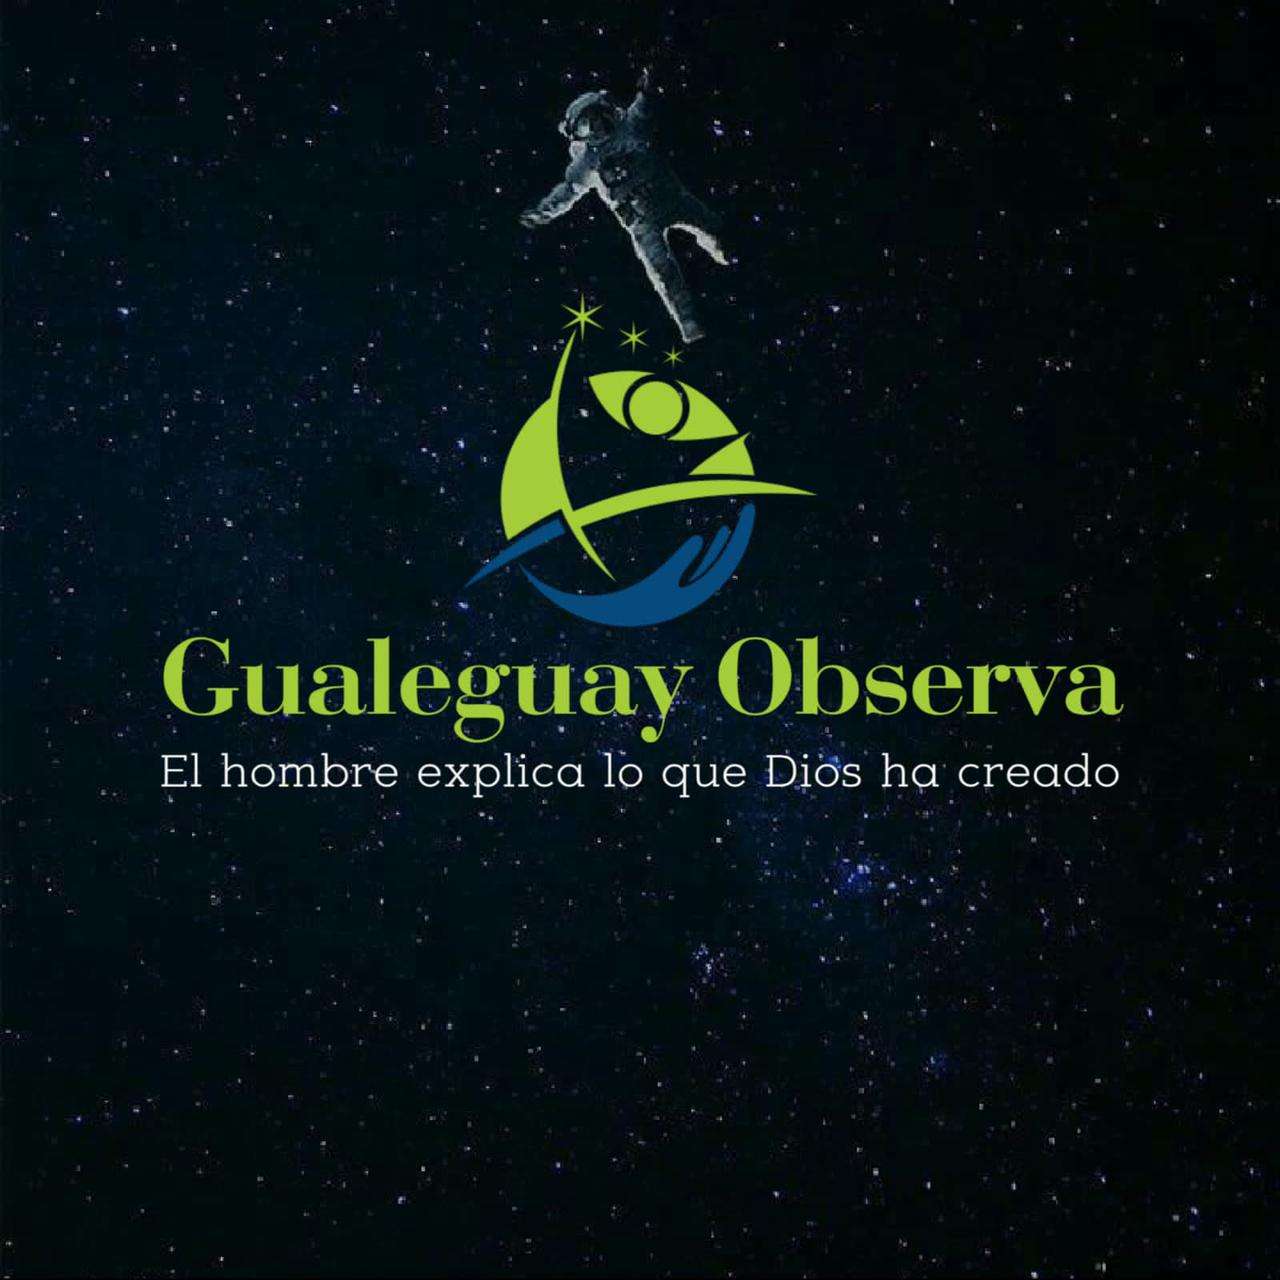 Gualeguay Observa organiza una campaña solidaria